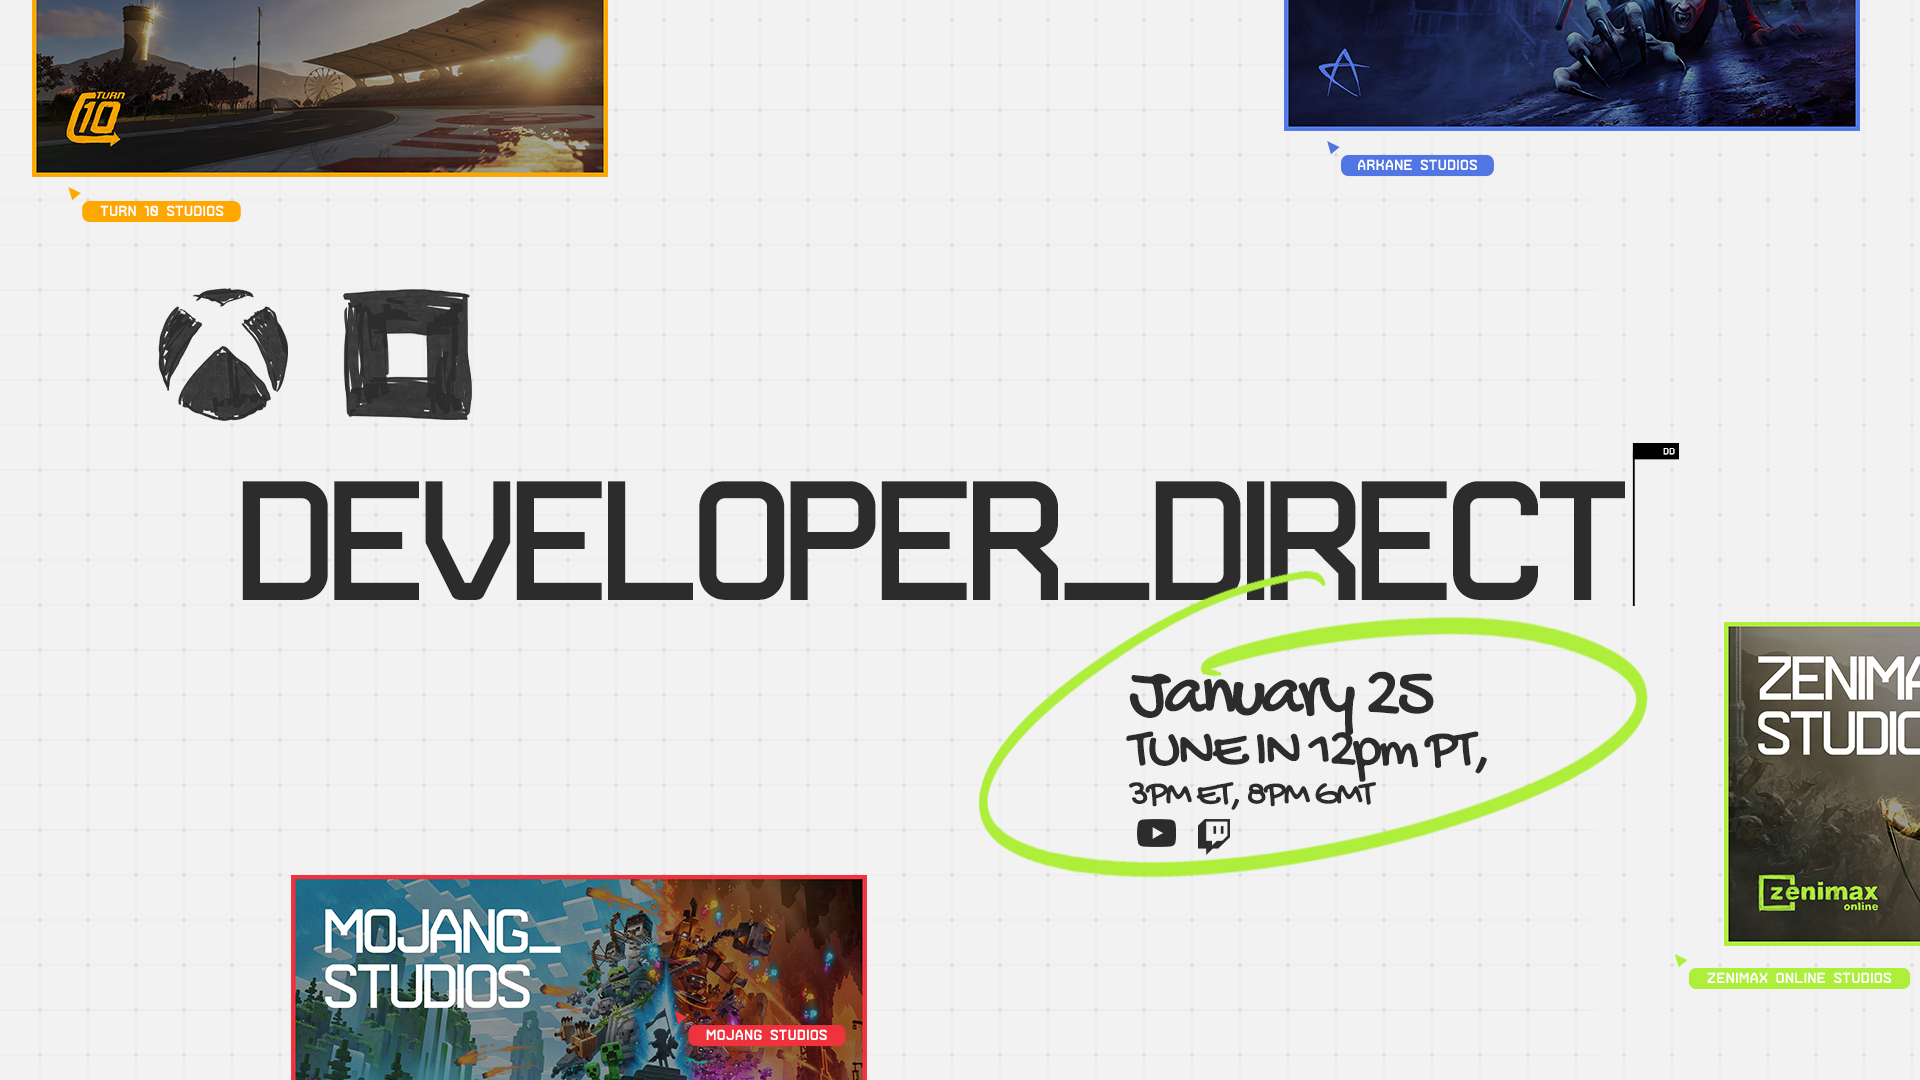 Xbox ja Bethesda esittävät Developer_Direct -suoratoiston 25. tammikuuta